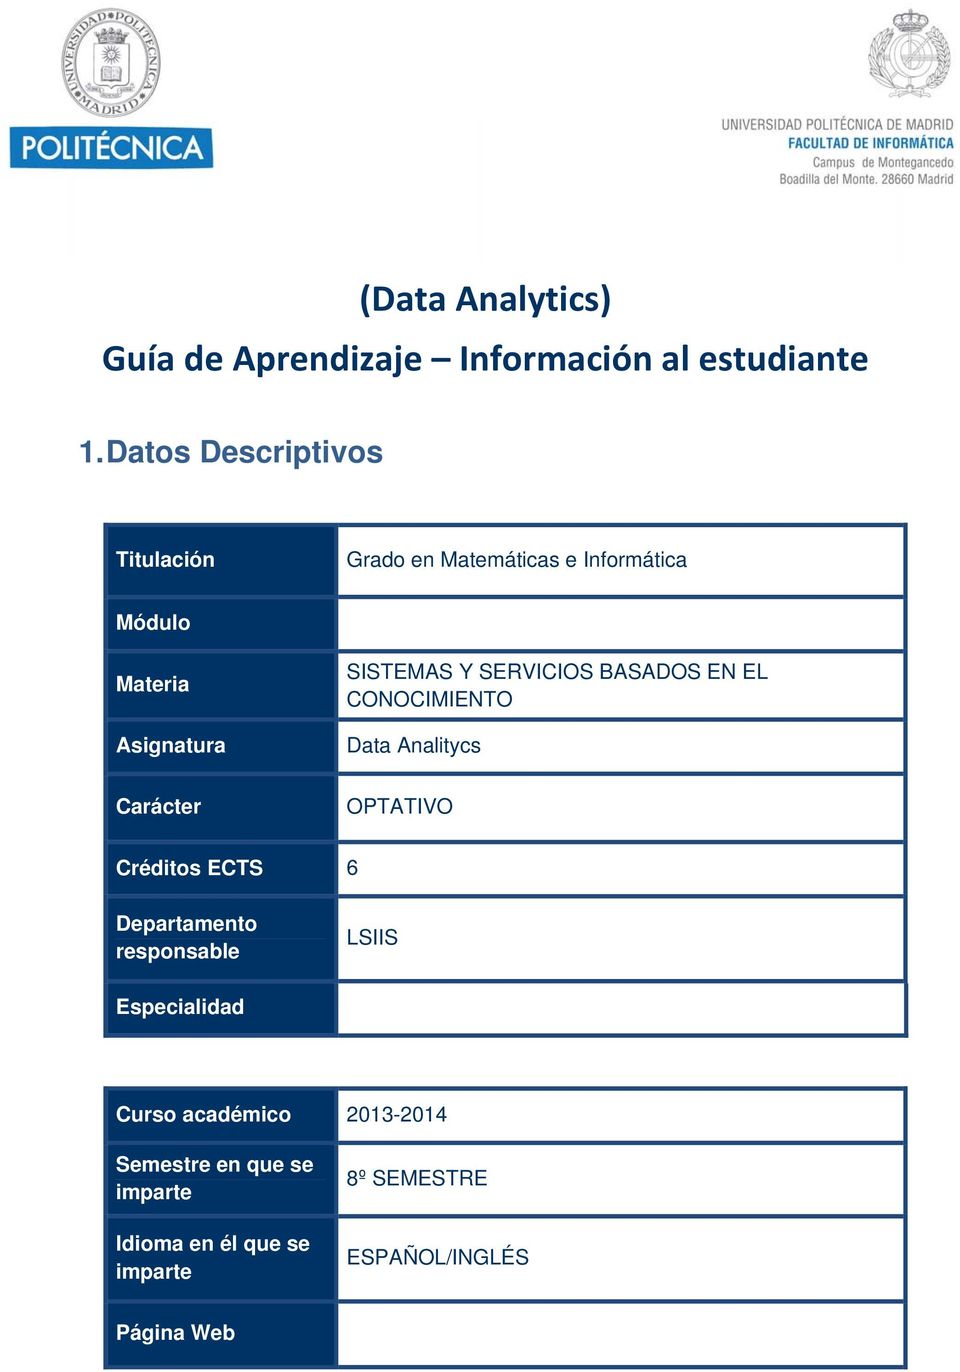 SISTEMAS Y SERVICIOS BASADOS EN EL CONOCIMIENTO Data Analitycs OTATIVO Créditos ECTS 6 Departamento